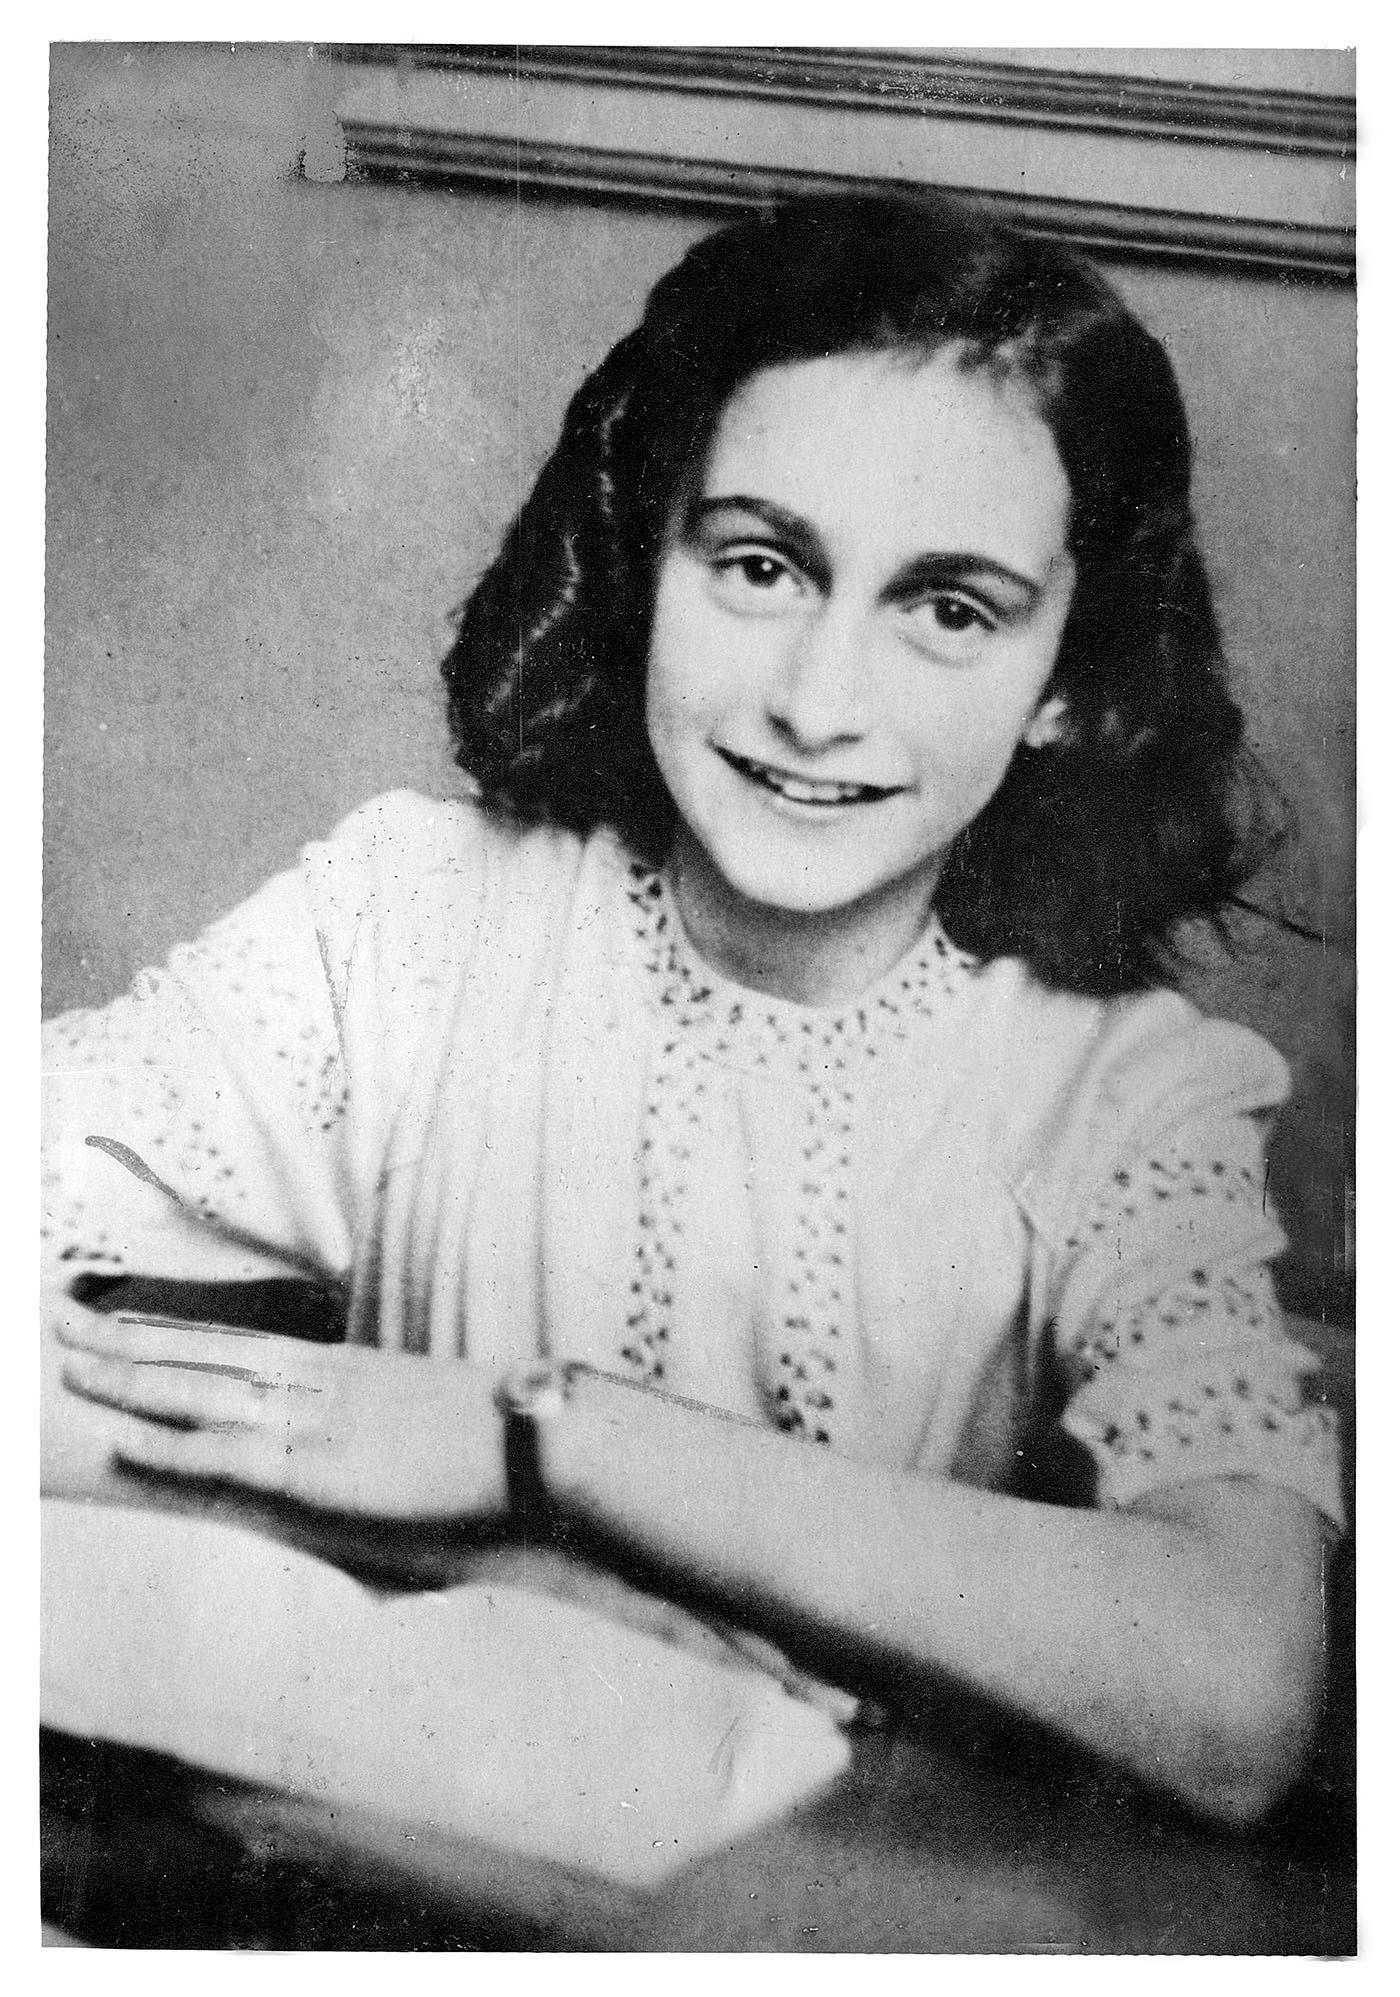 Anne Frank, elva år gammal, två år innan hon och hennes familj gömde sig på vindsvåningen.